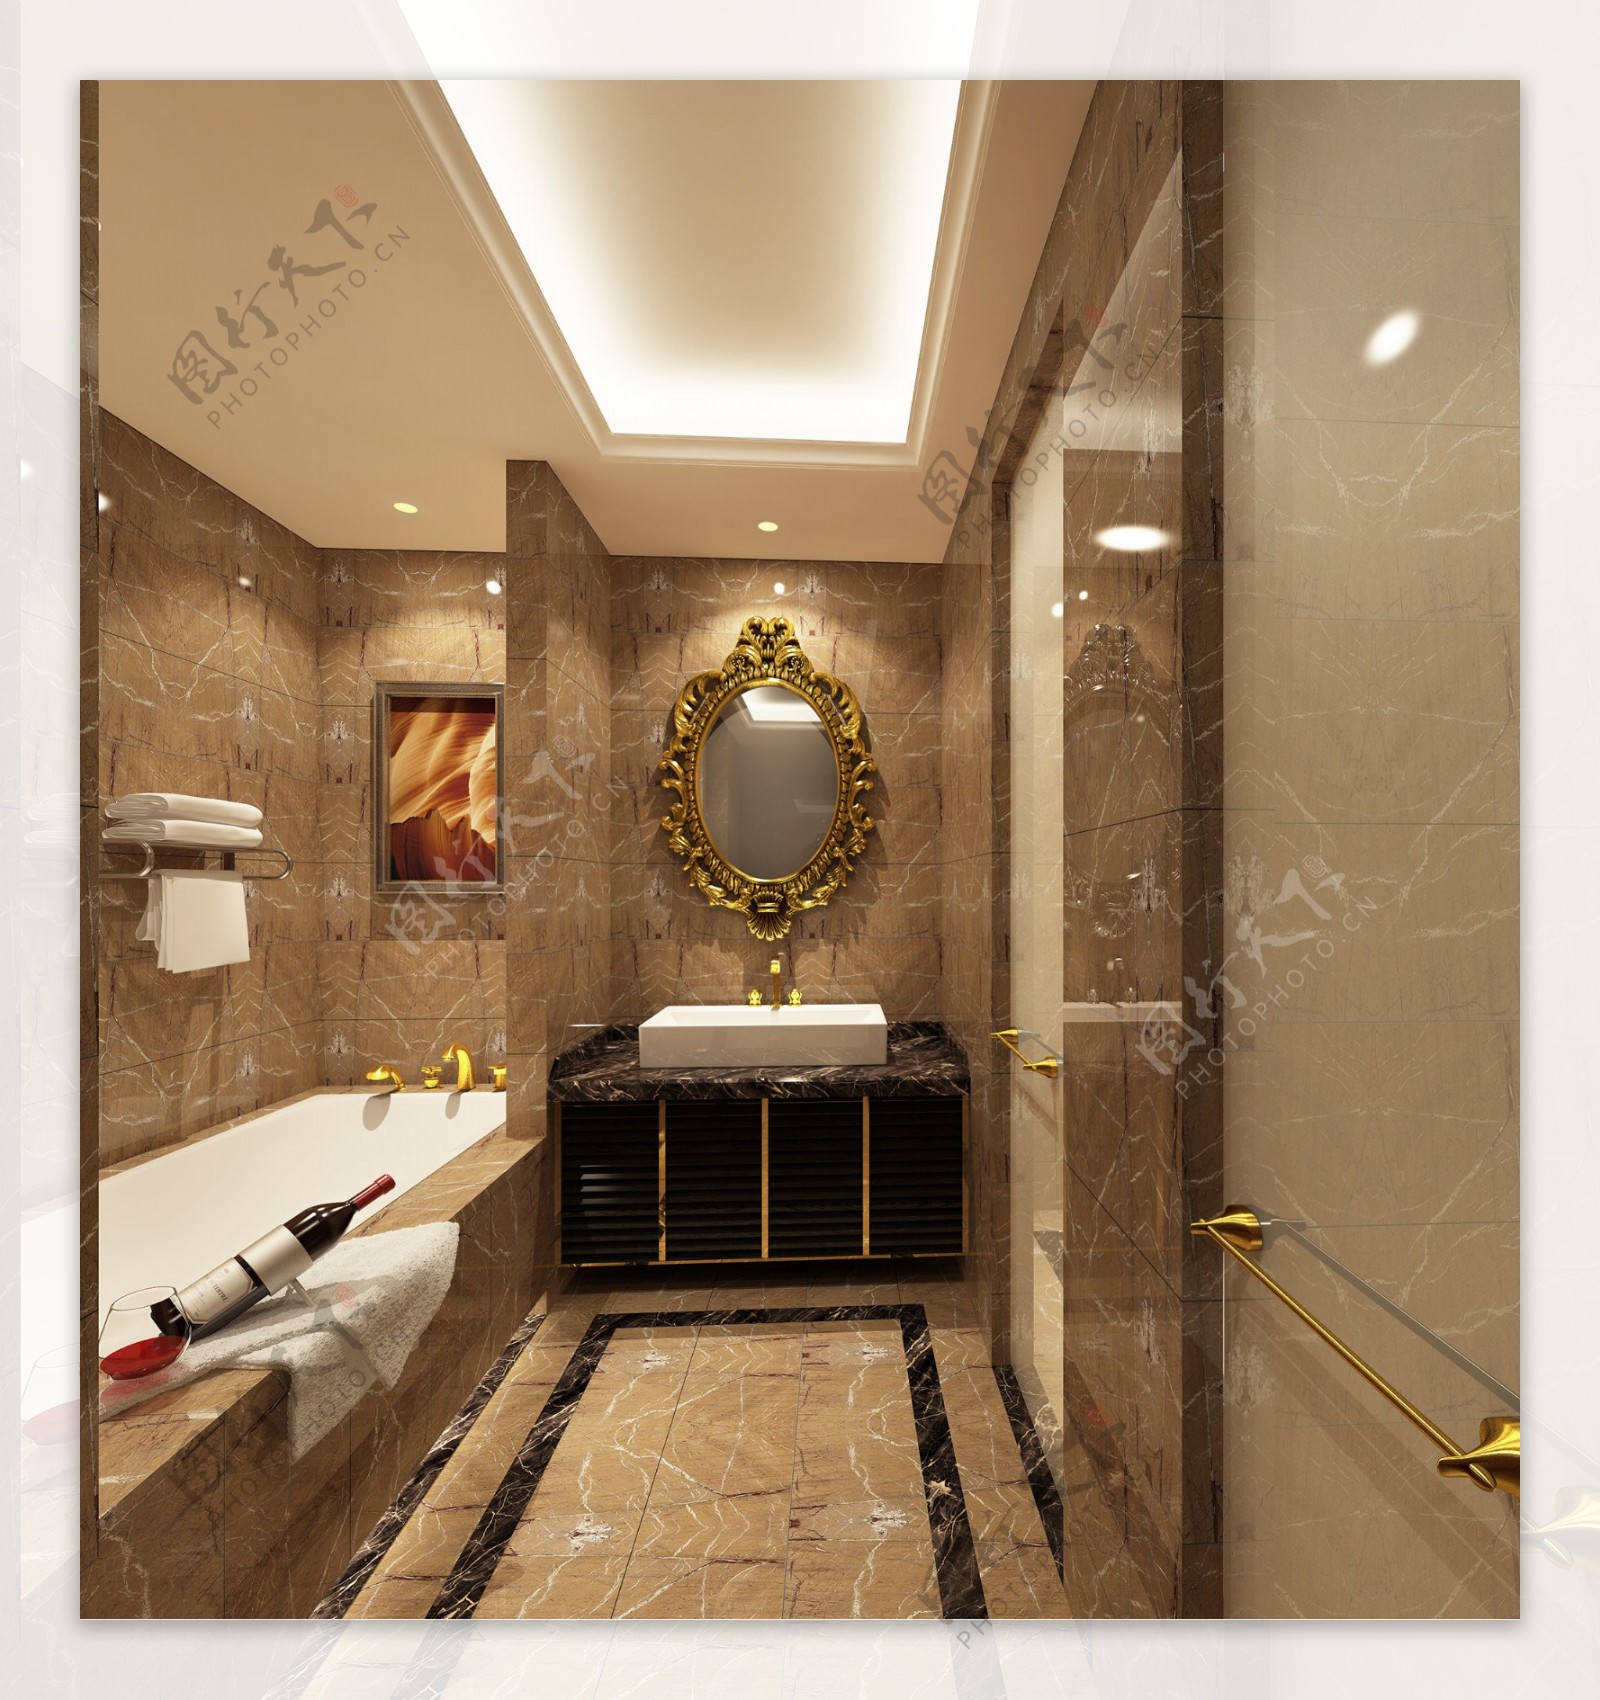 五星级酒店浴室设计效果图